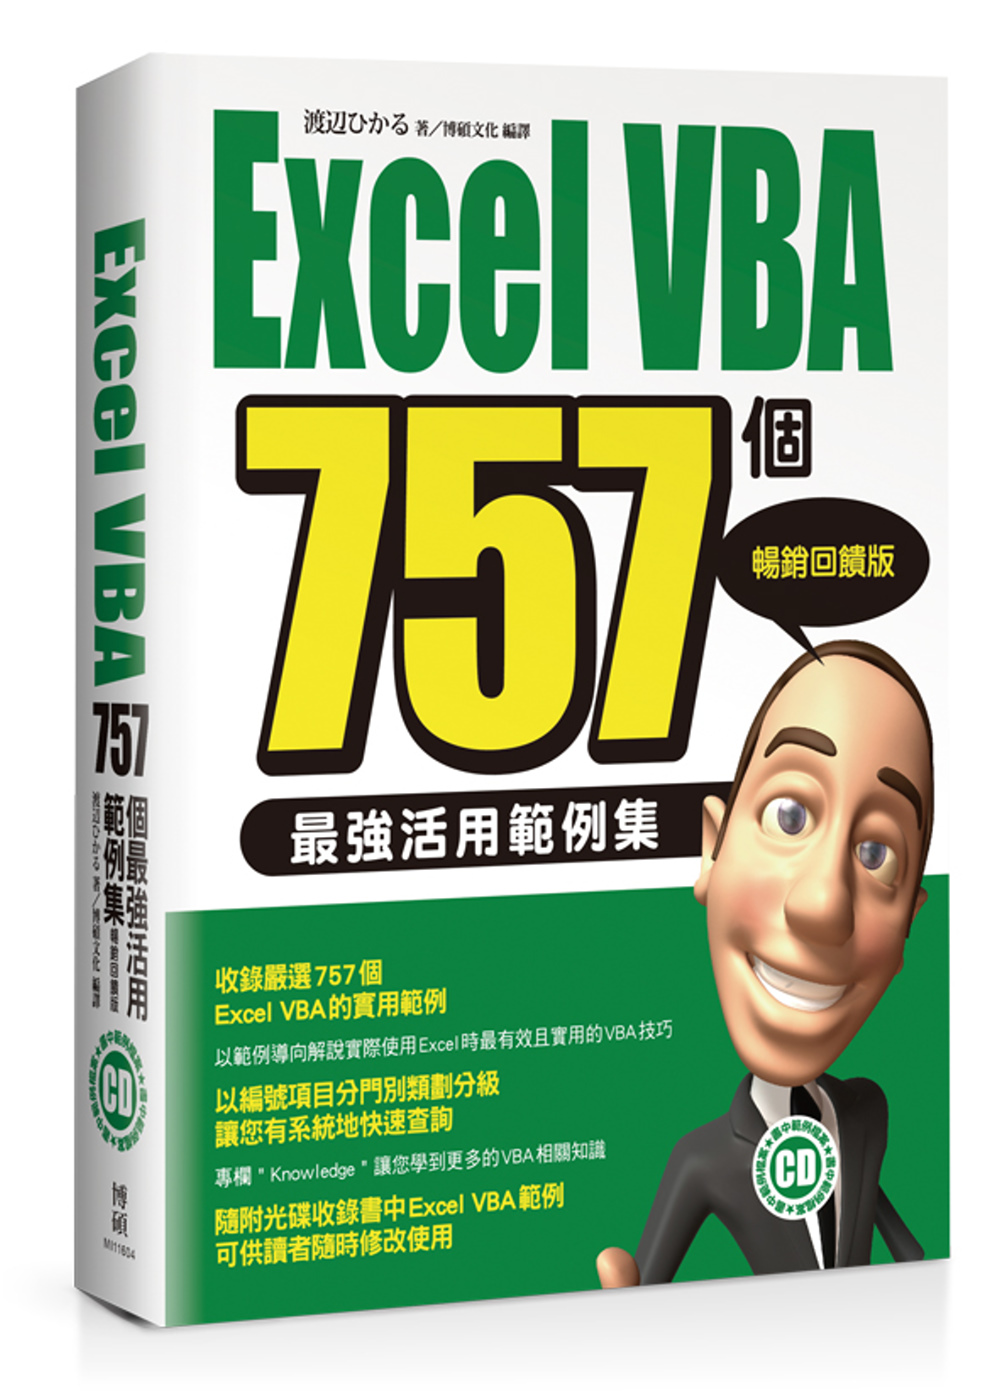 Excel VBA 757個最強活用範例集-暢銷回饋版